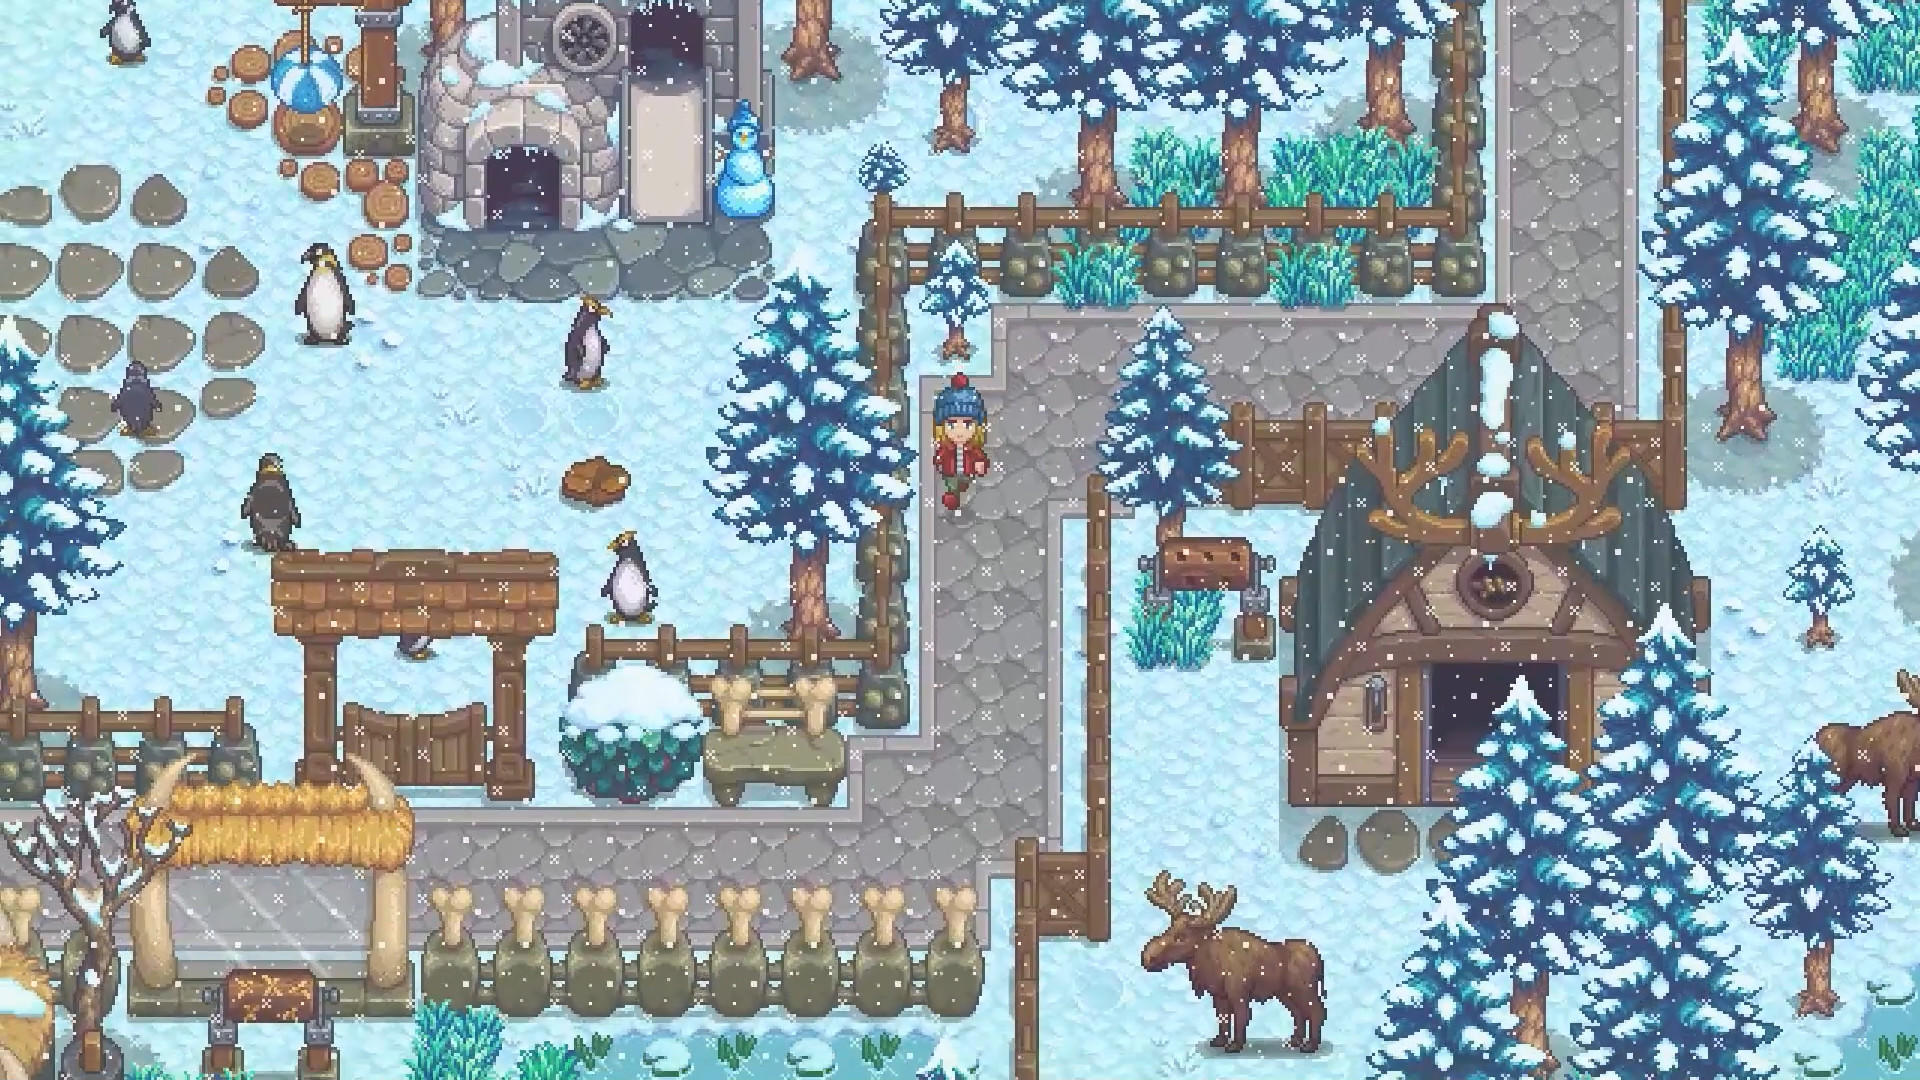 Super Zoo Story screenshot game